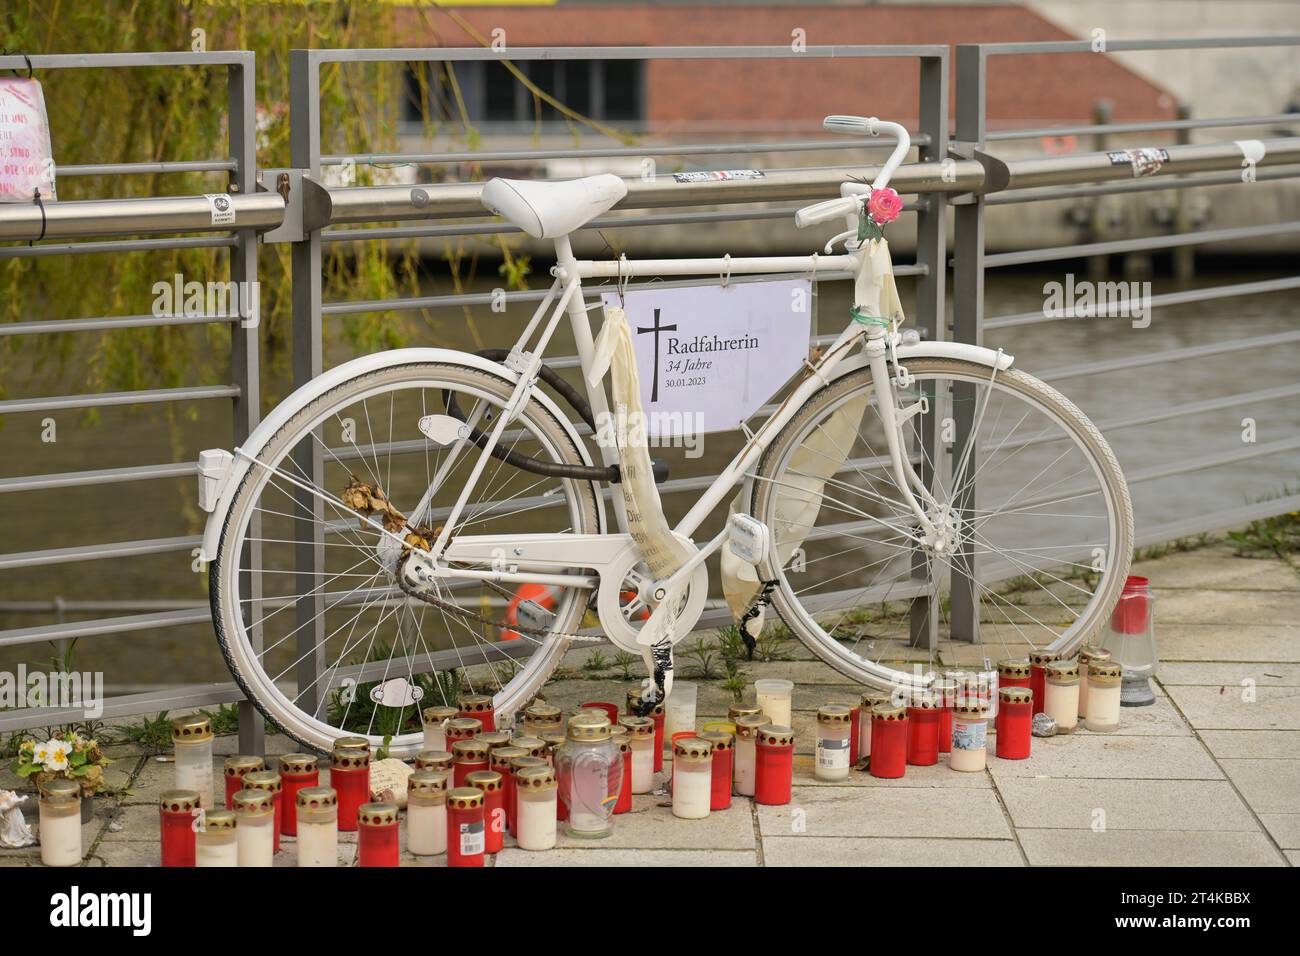 Geisterrad erinert an Fahrradunfall mit Todesfolge, Hafencity, Hamburg, Deutschland Banque D'Images